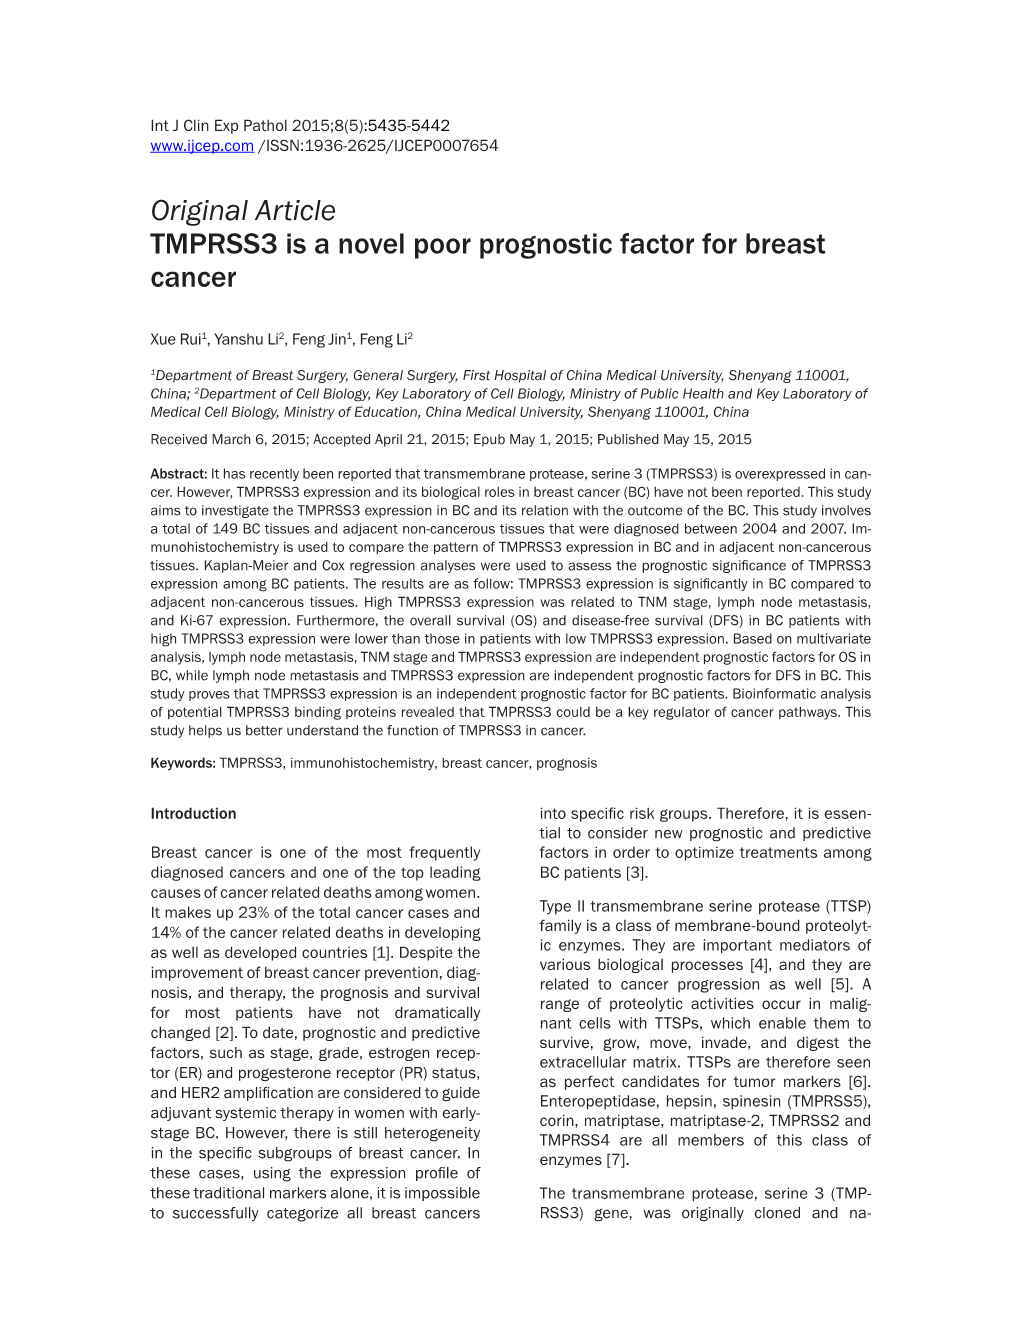 Original Article TMPRSS3 Is a Novel Poor Prognostic Factor for Breast Cancer